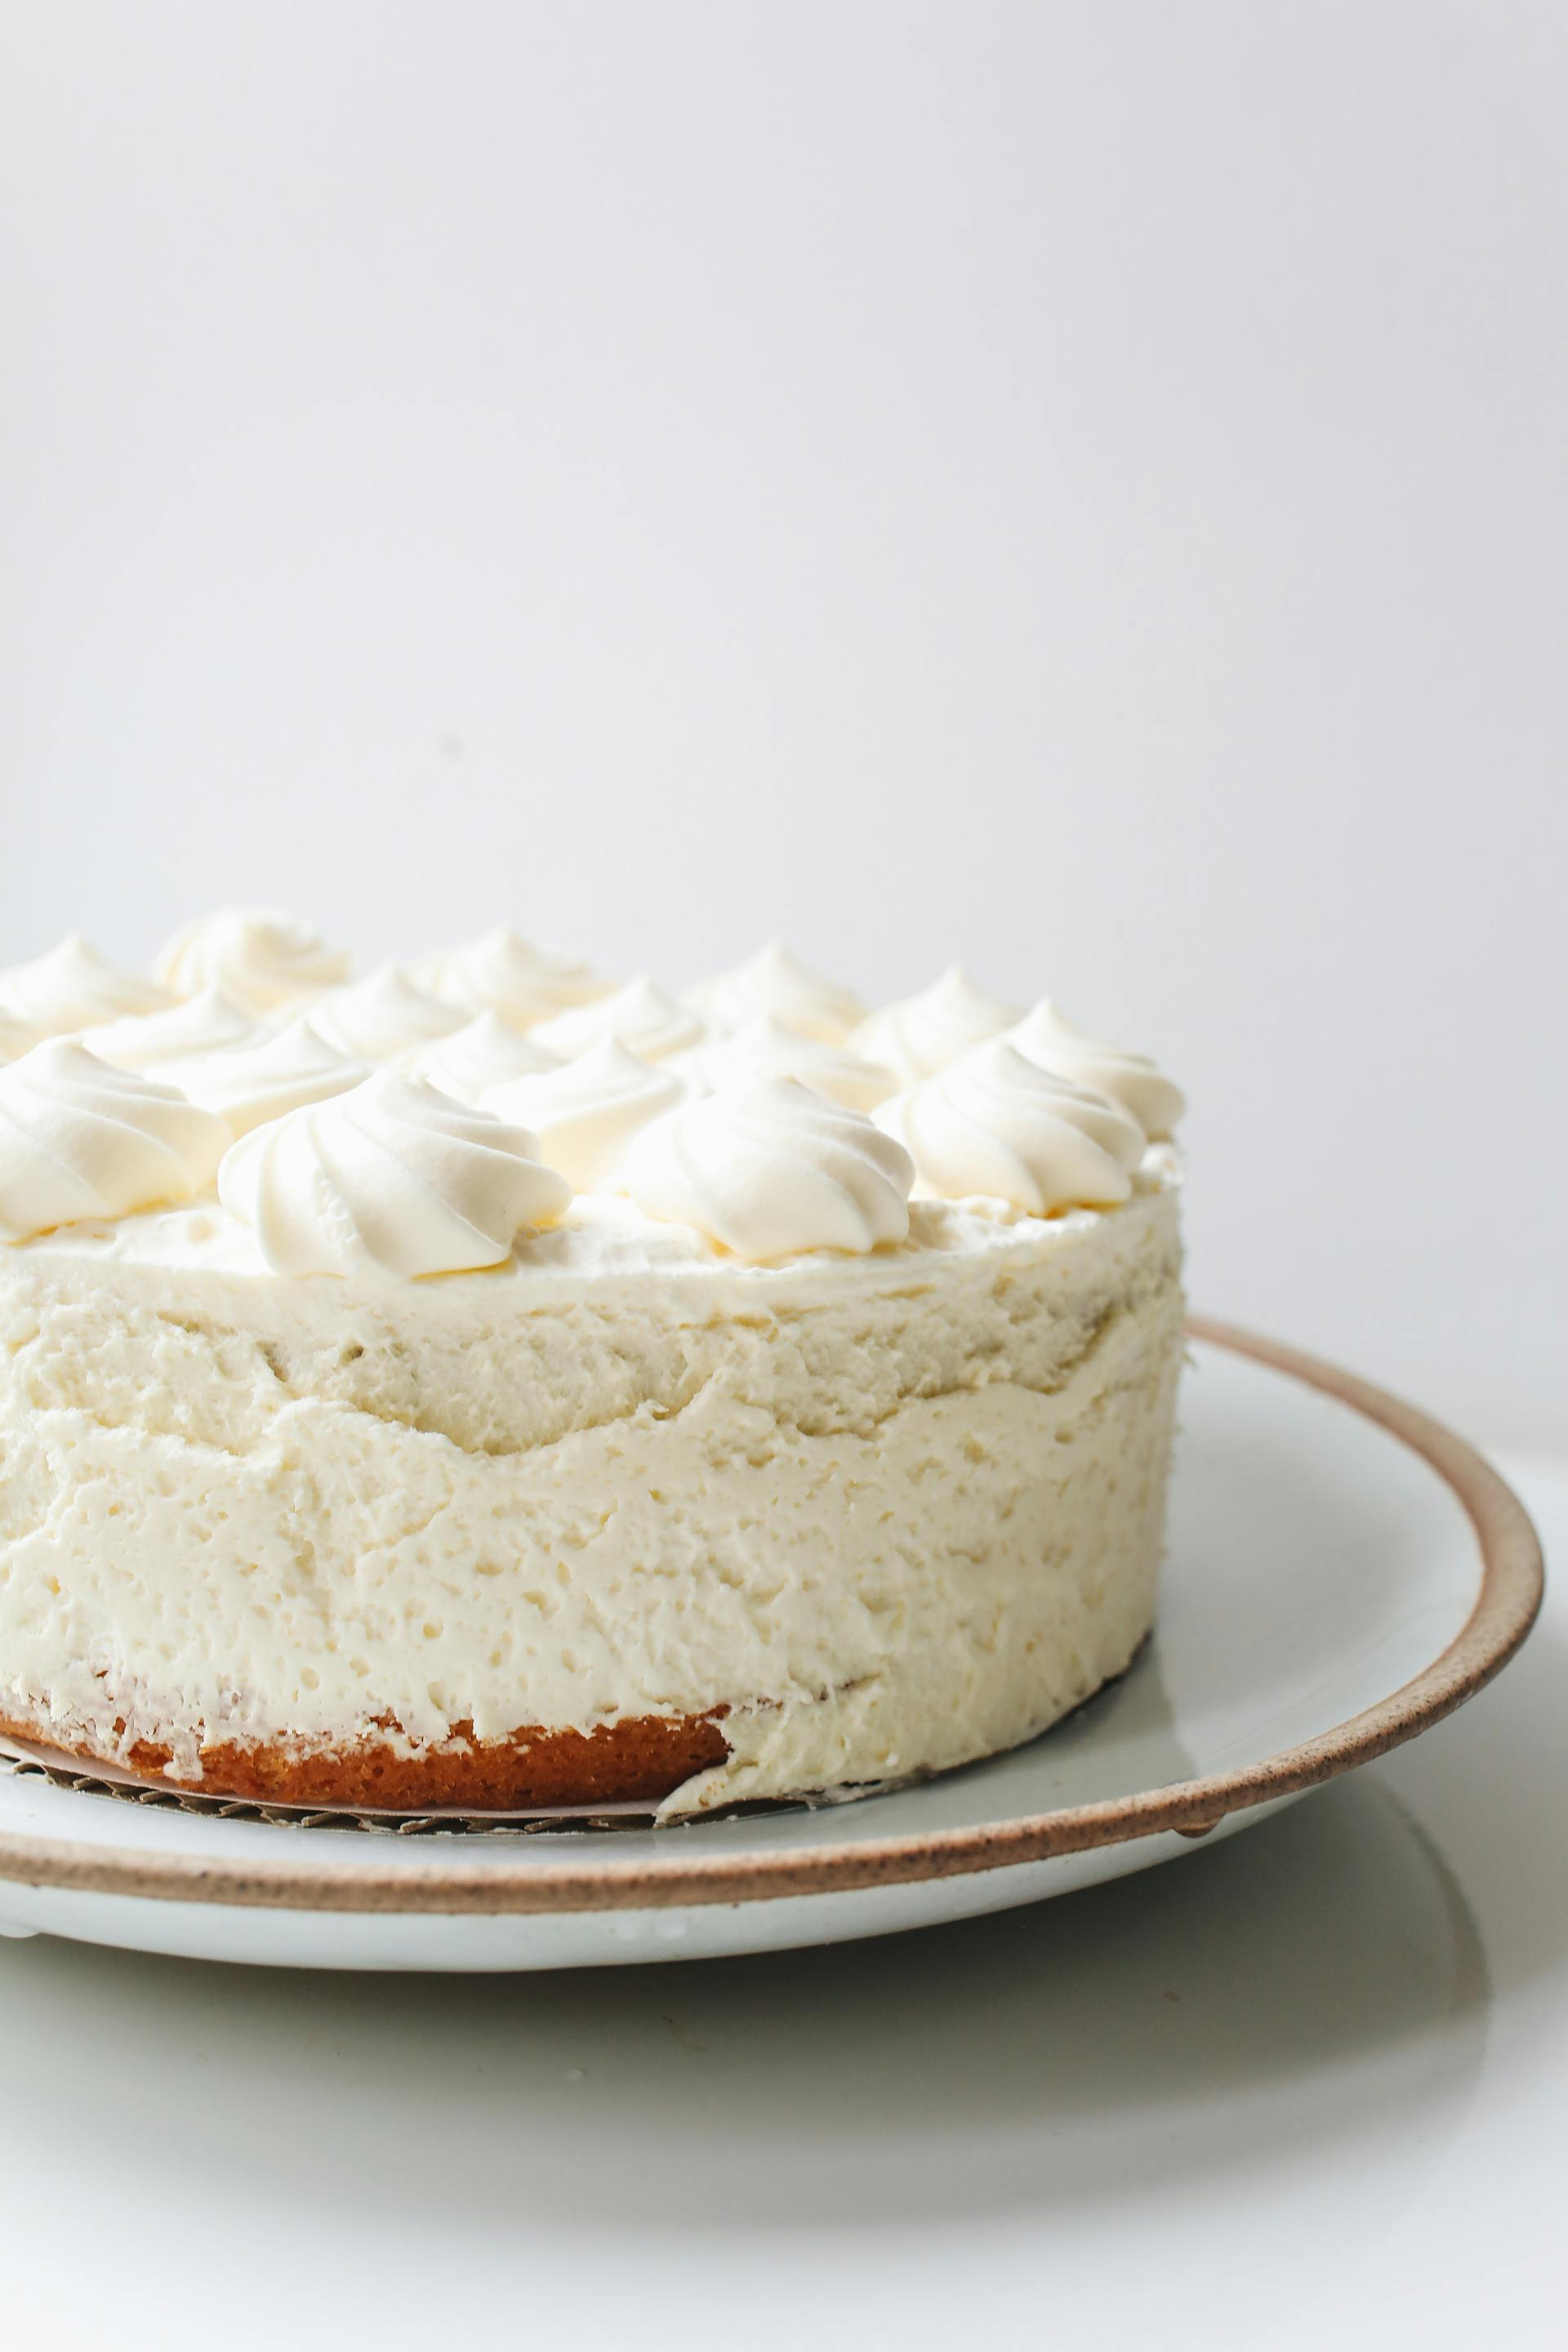 Un gâteau blanc glacé | Source : Pexels